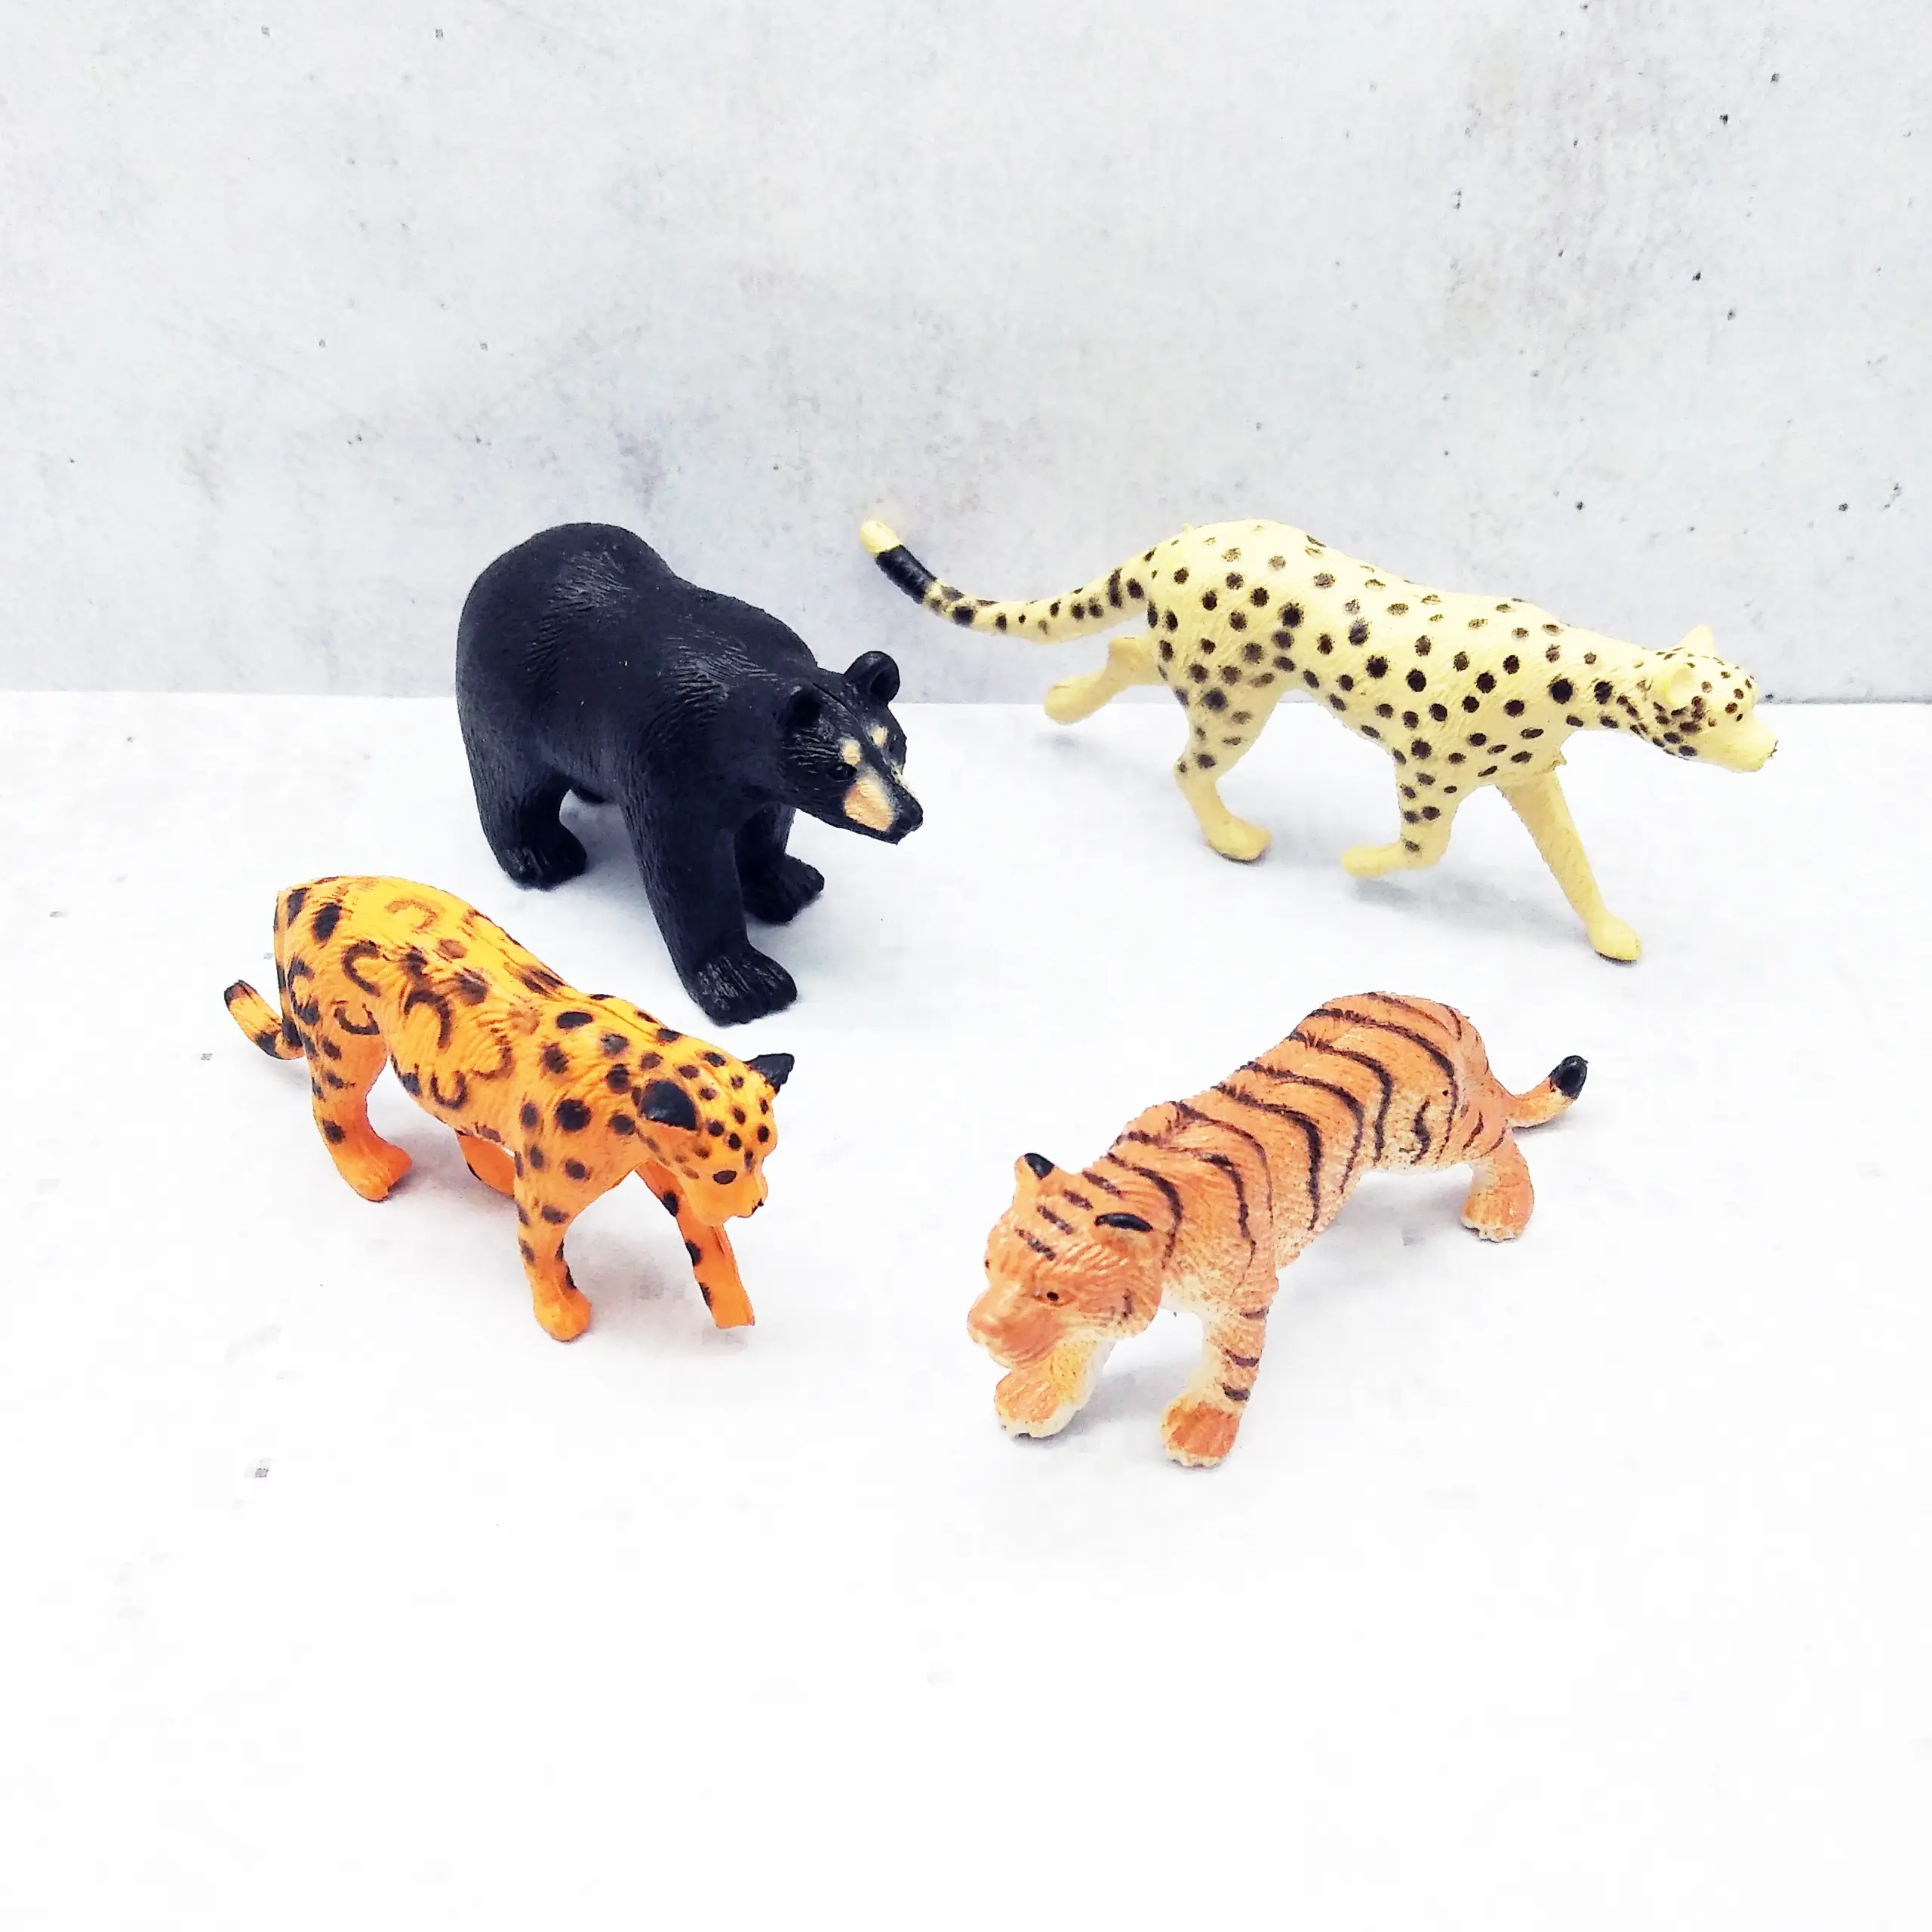 Miniatura 2022 bonecas, miniatura 1:12, acessórios diy, animais e plantas da vida selvagem